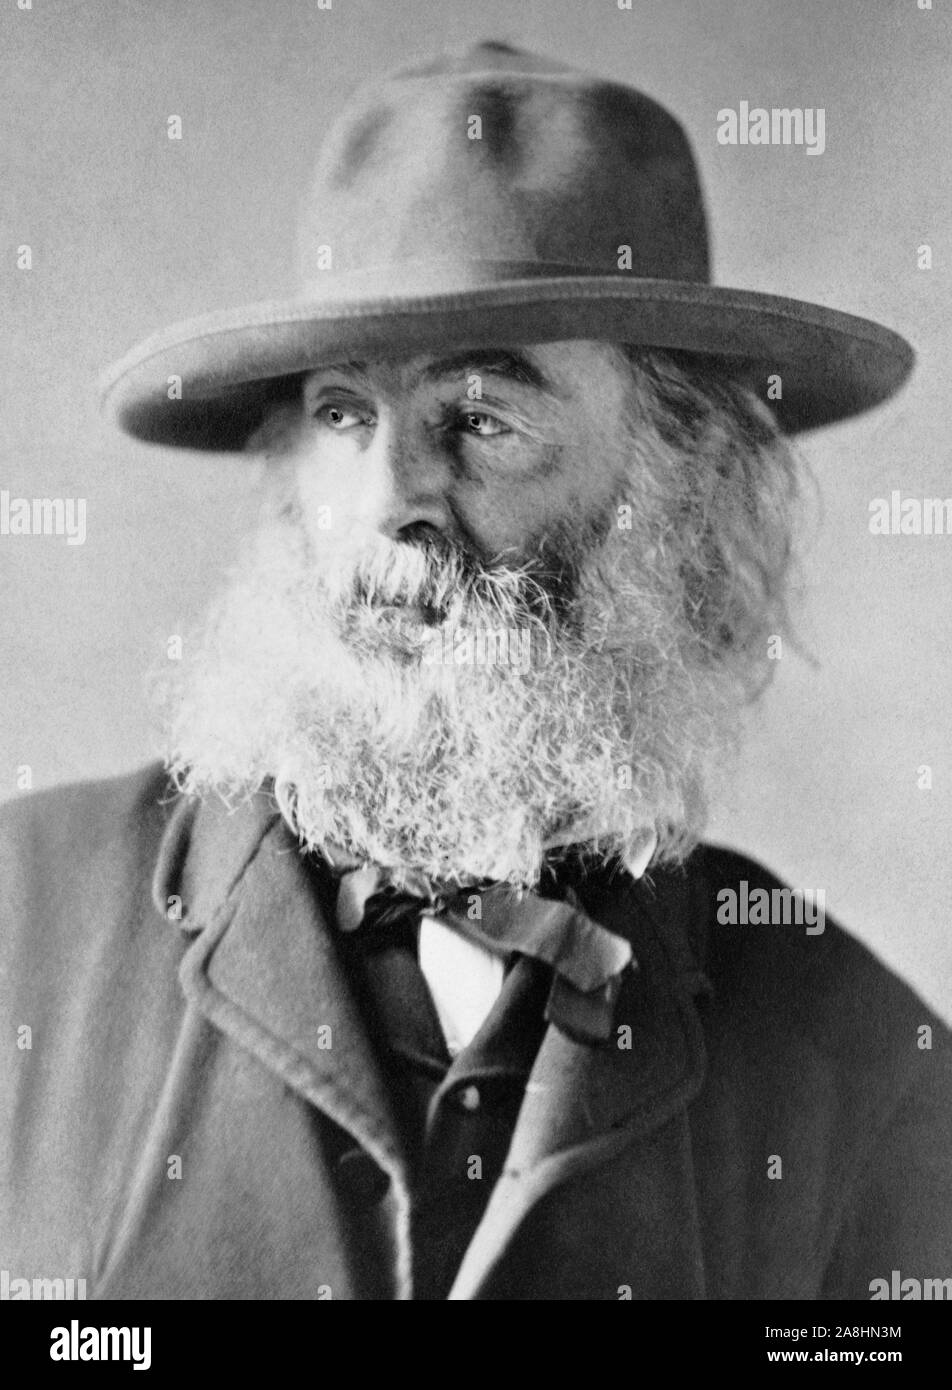 Vintage photo portrait de poète, essayiste et journaliste Walt Whitman (1819 - 1892). Photo vers 1869 par William Kurtz. Banque D'Images